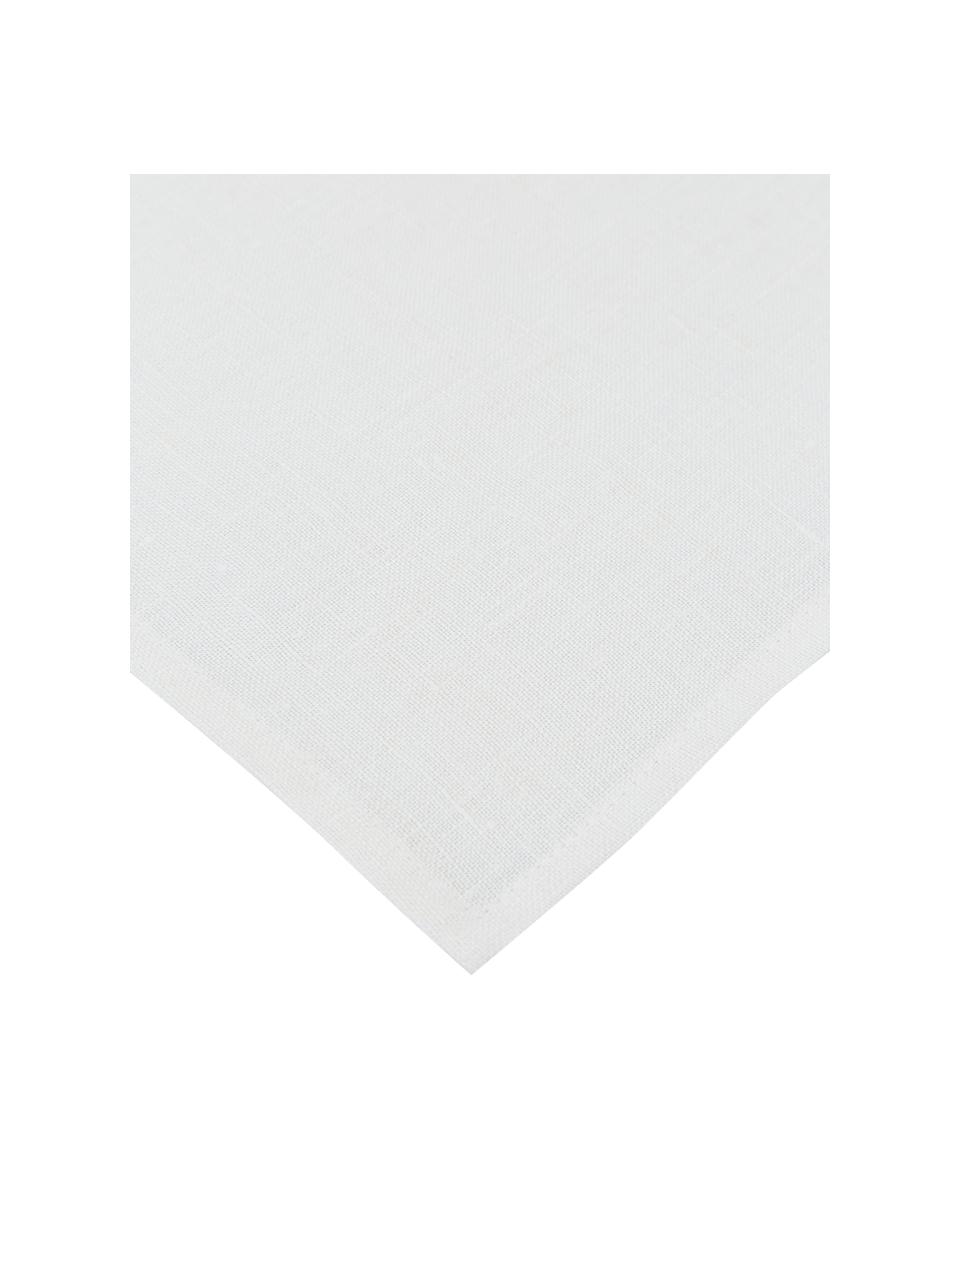 Mantel de lino Heddie, 100% lino, Blanco, De 4 a 6 comensales (An 145 x L 200 cm)